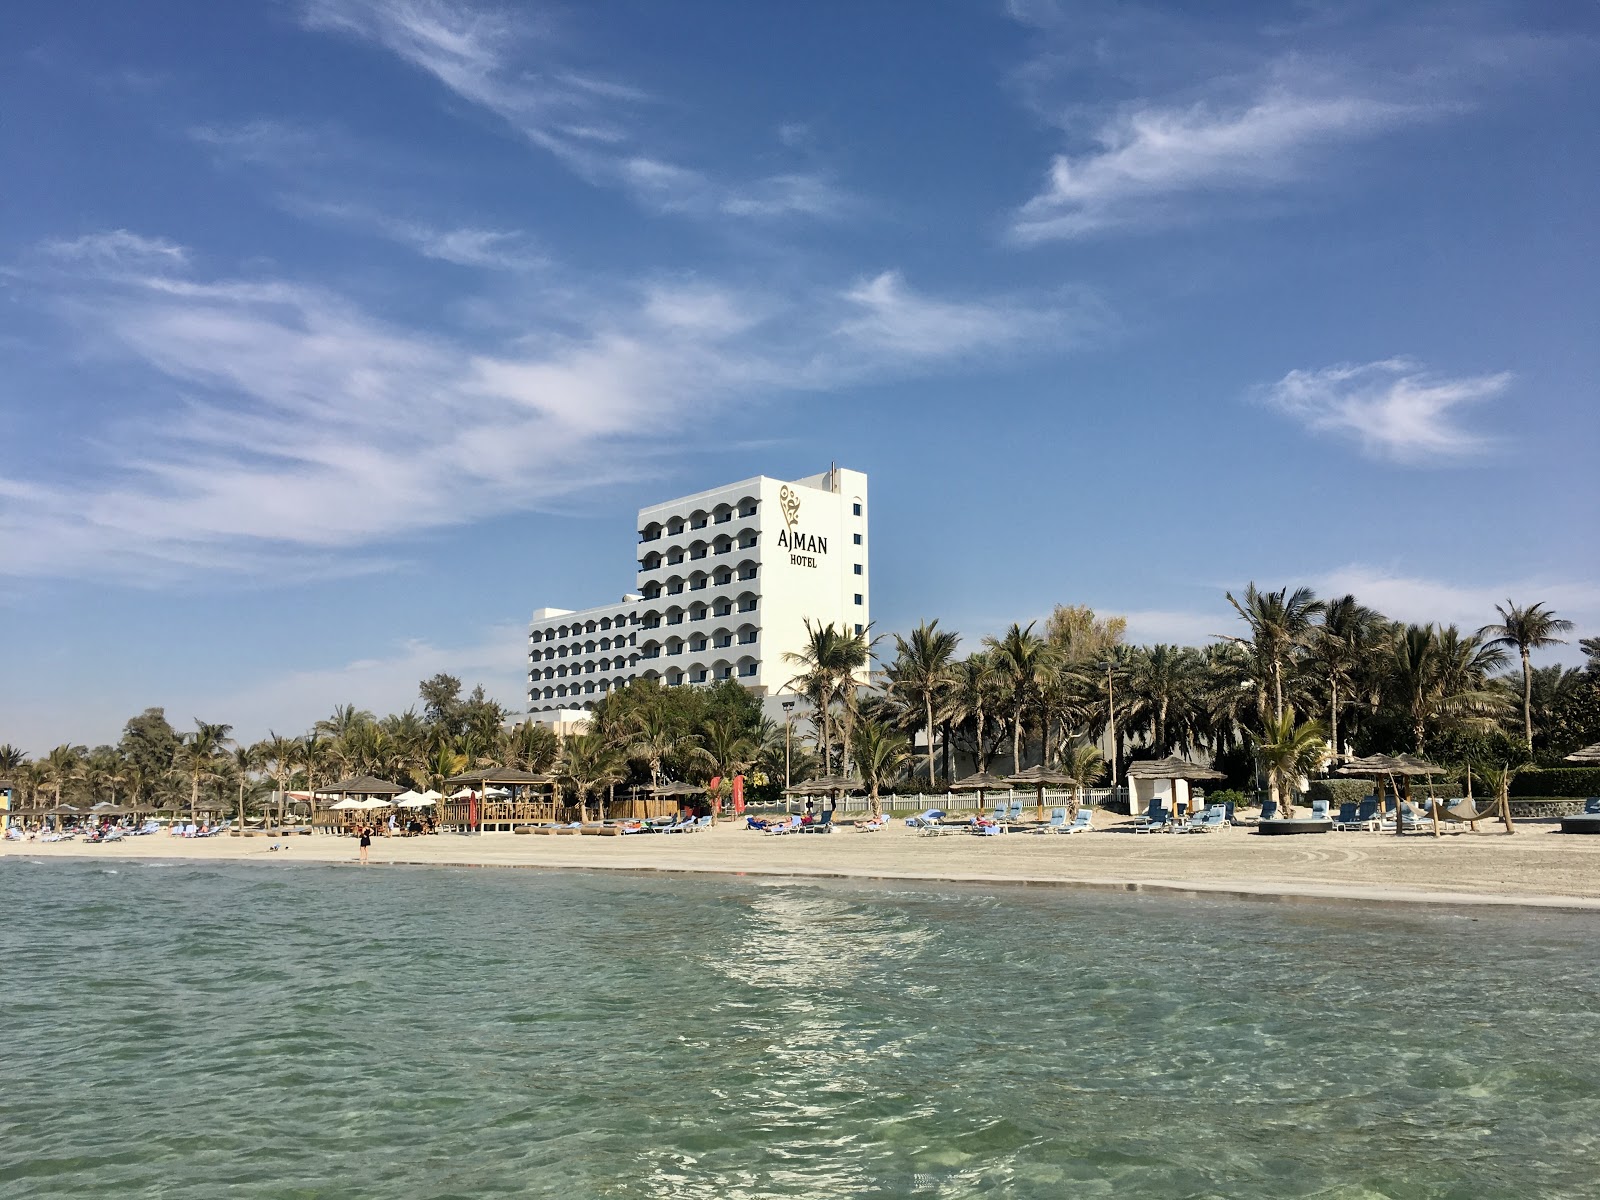 Foto de Playa del Resort de Ajman - lugar popular entre los conocedores del relax